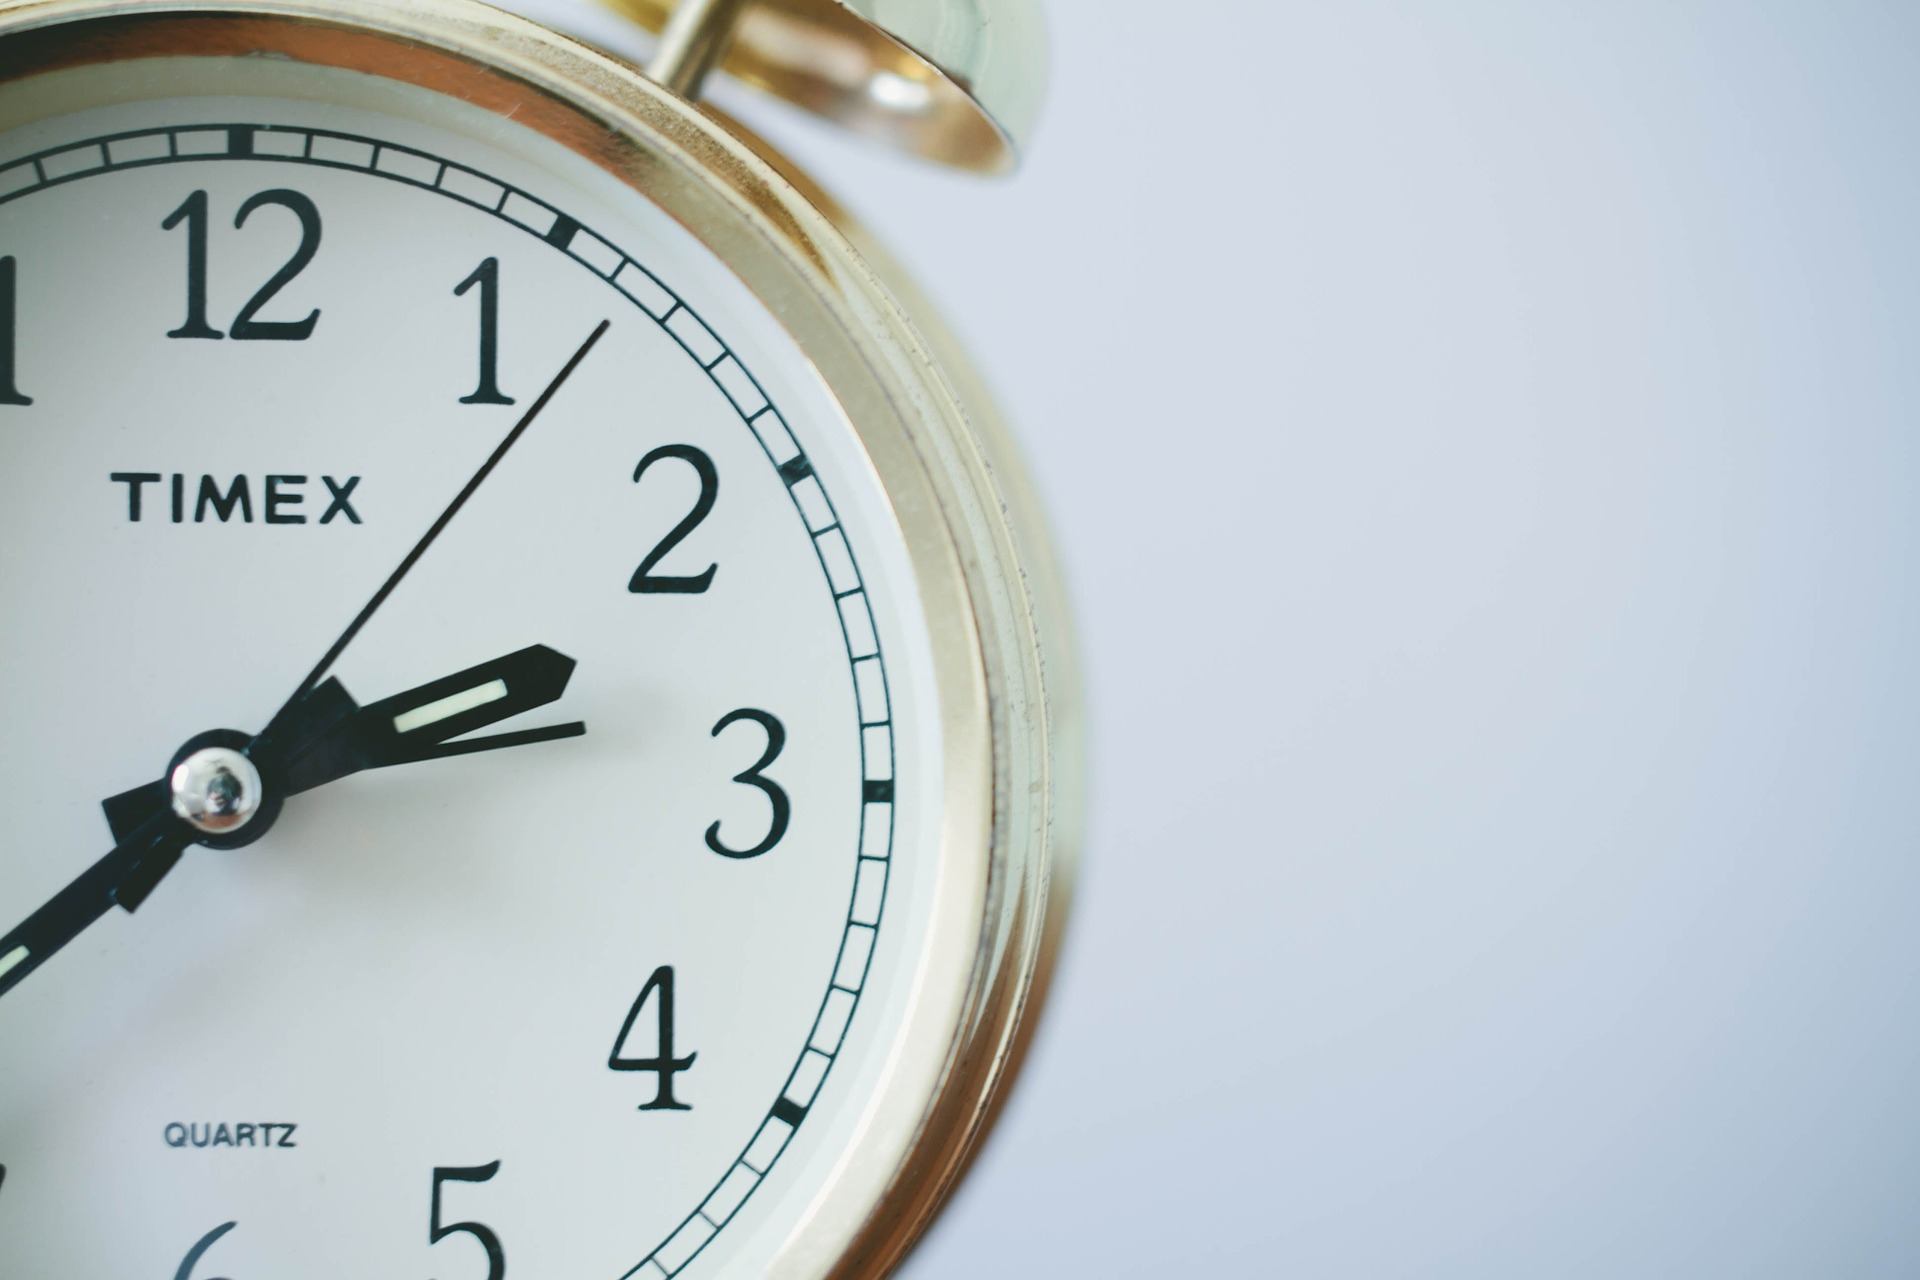 Eine weiße Uhr ist halb zu sehen - zur Veranschaulichung des Blogbeitrags zur Optimierung der Ladegeschwindigkeit